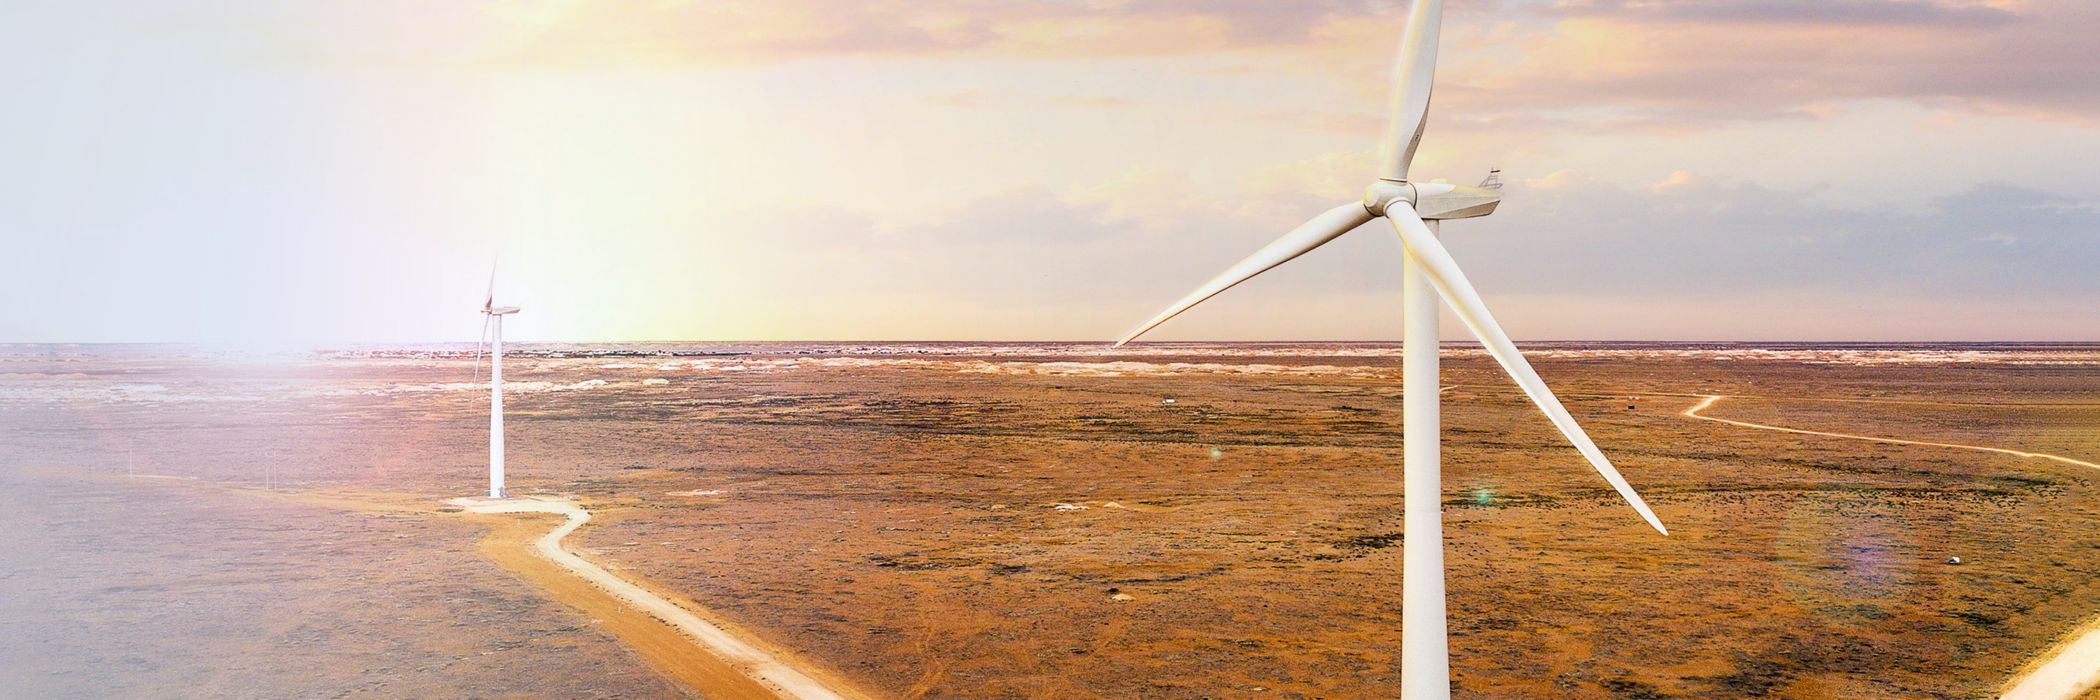 South australian wind turbines landscape